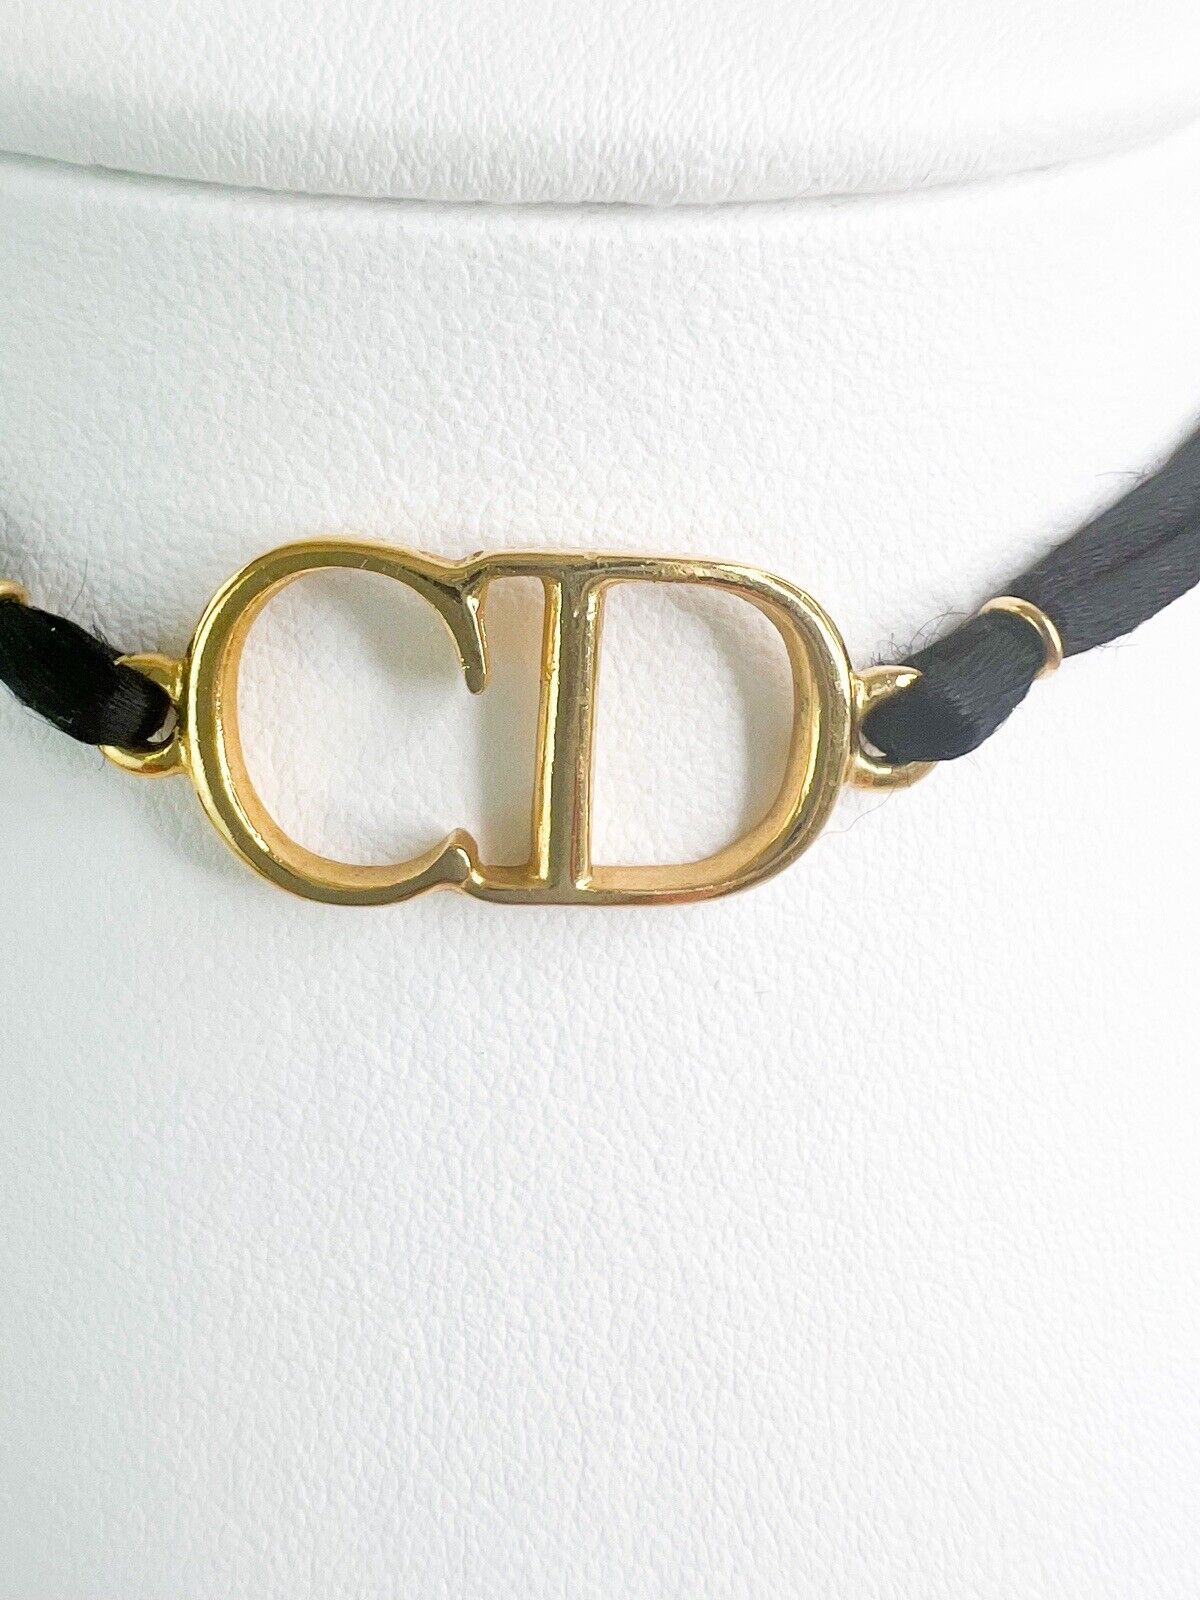 Christian Dior Vintage Necklace Gold Bracelet CD Logo